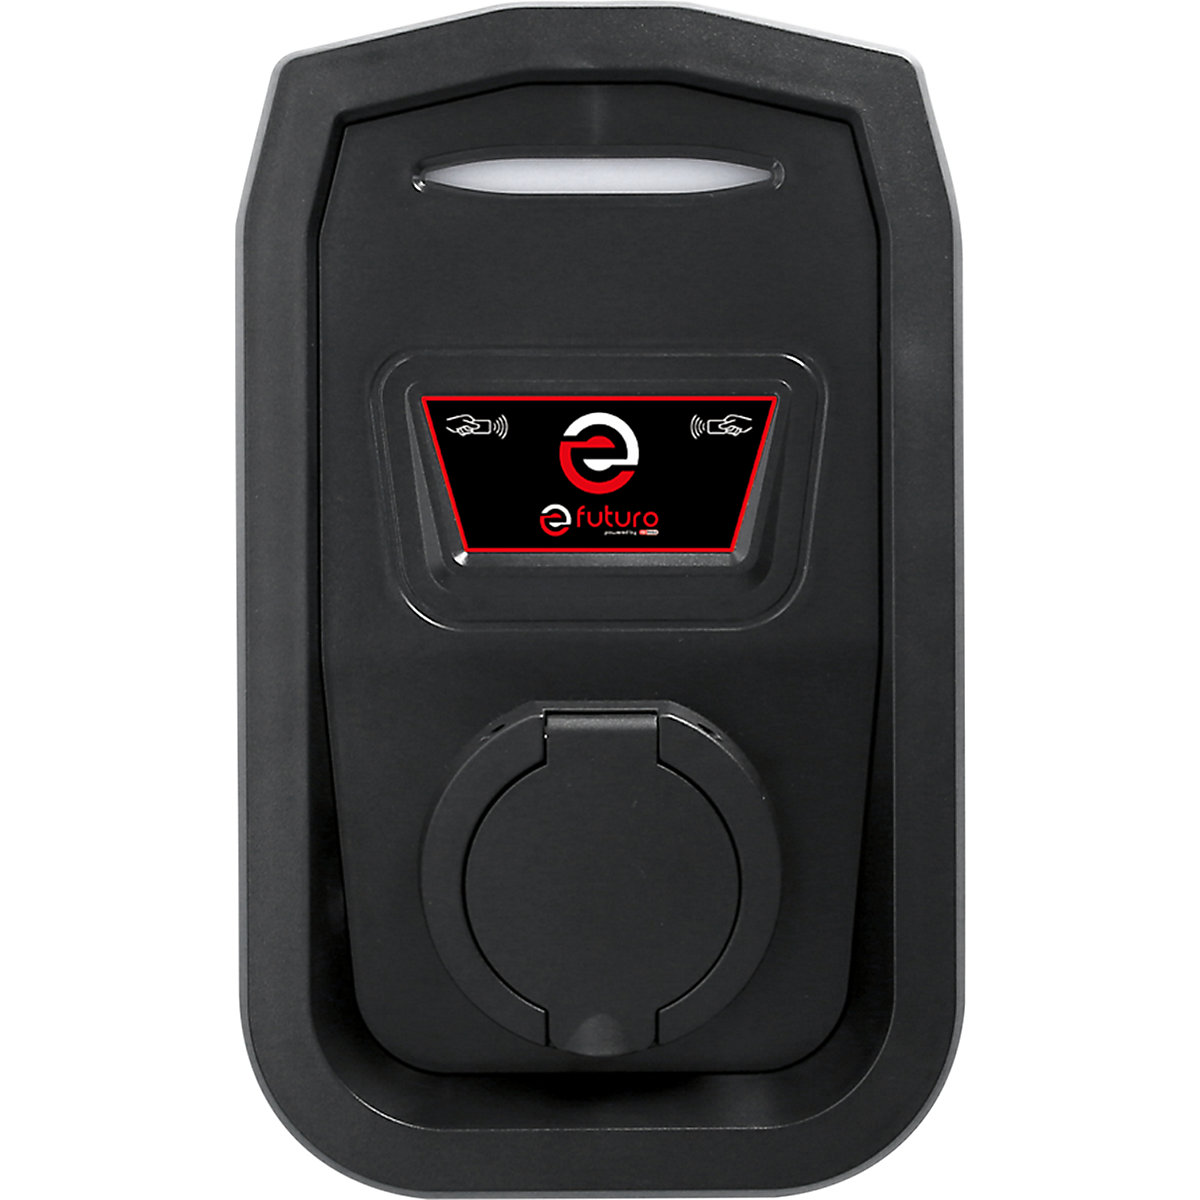 waardigheid Justitie Soms efuturo-wallbox met type 2-stopcontact, 1 fase: met RFID-toegangscontrole,  zonder elektriciteitsmeter | VINK LISSE